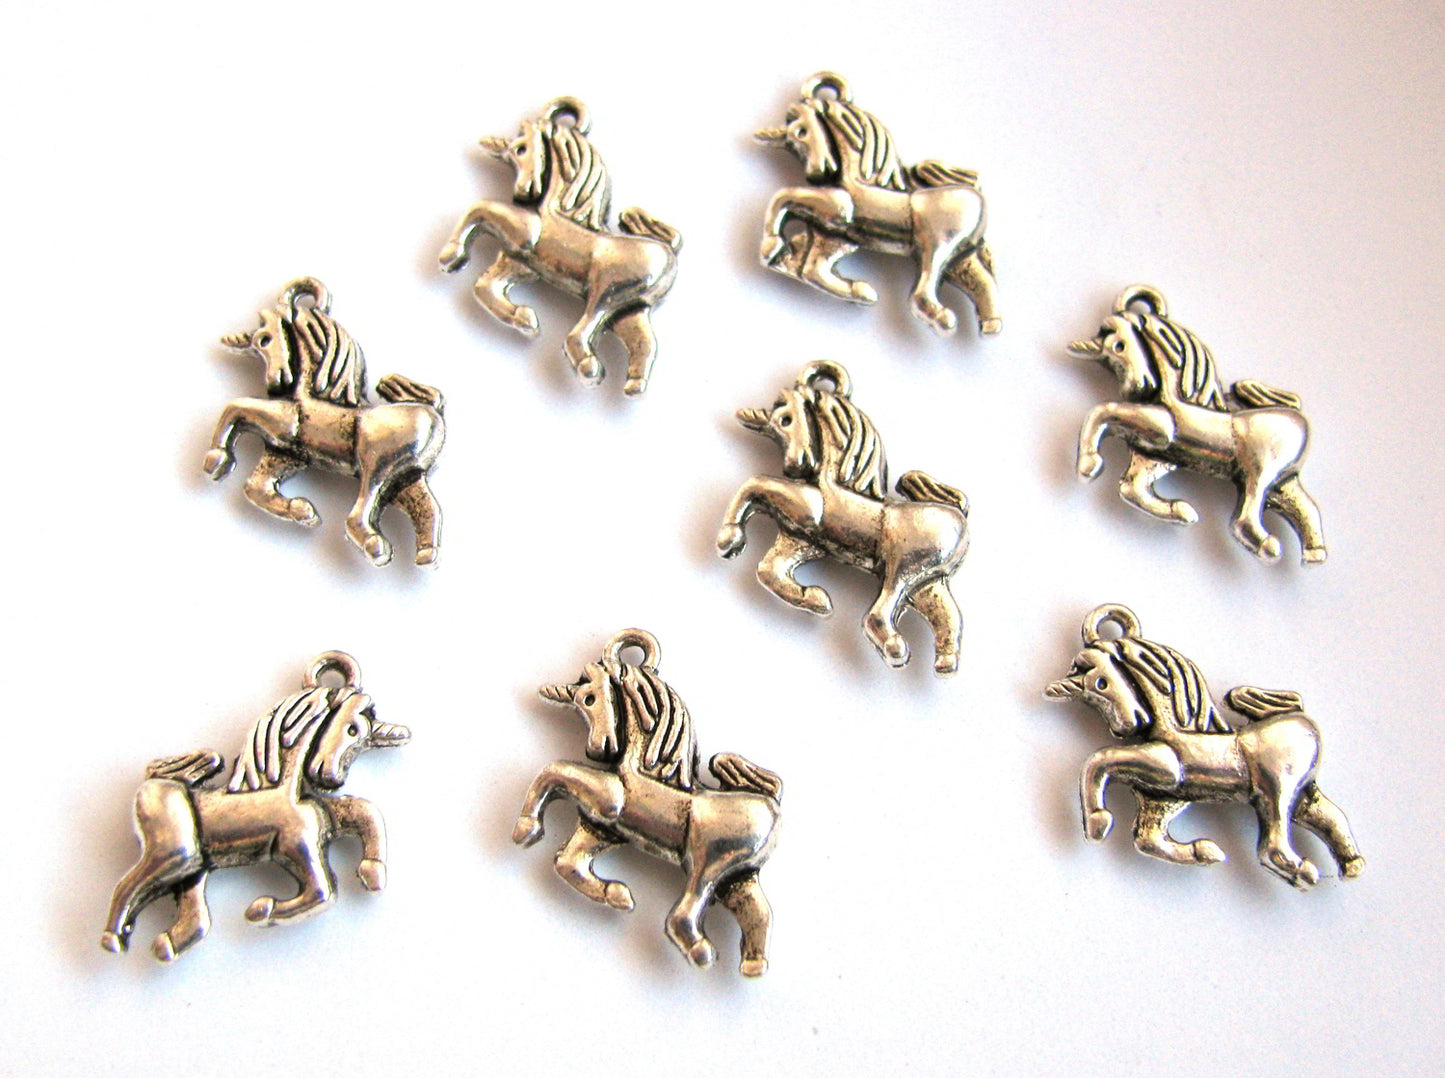 16 Metallanhänger Einhorn, silberfarben 2,1cm, Unicorn Anhänger, Perlen basteln